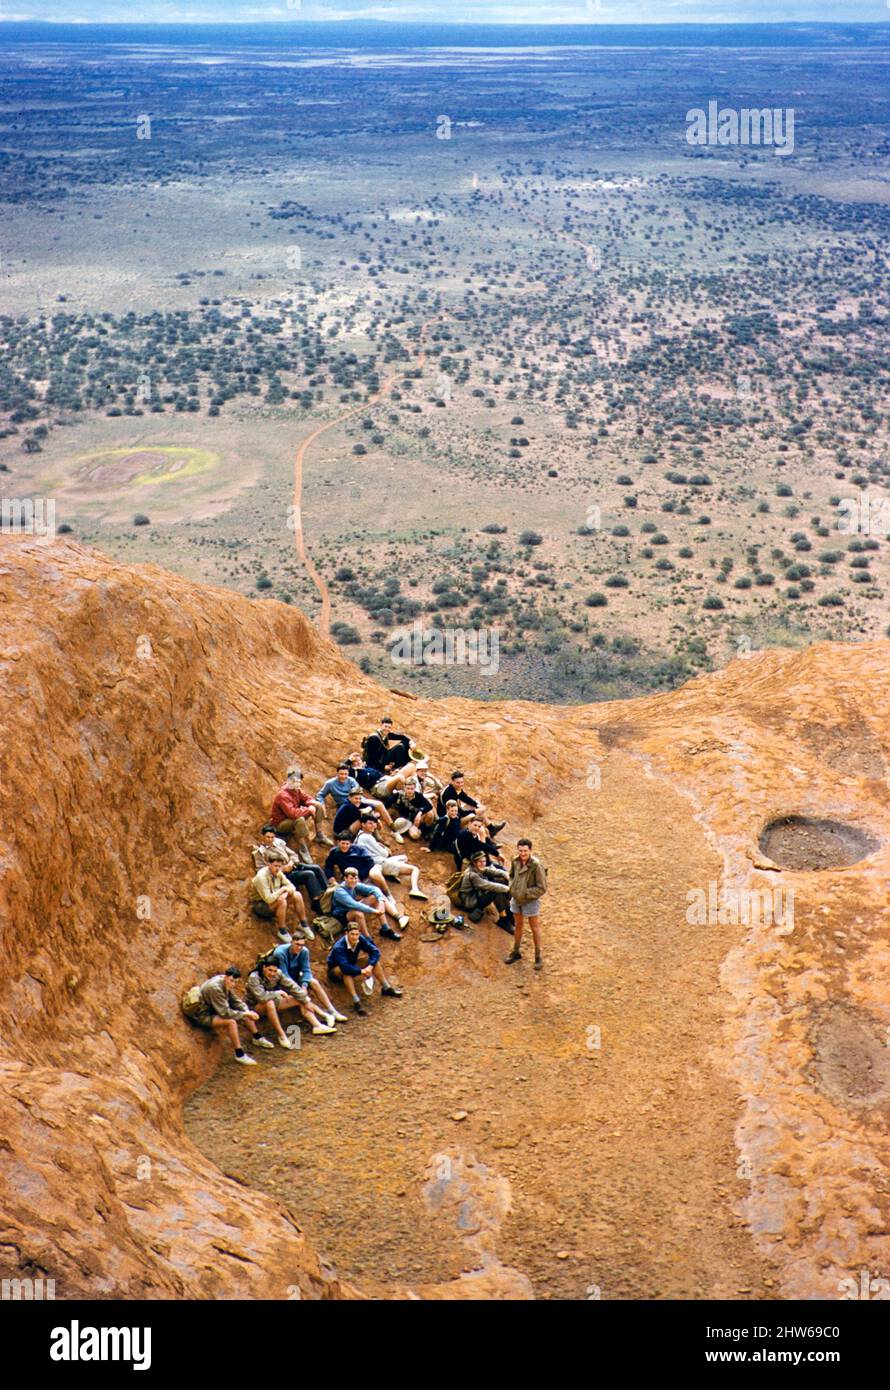 Melbourne Grammar School Expedition, Northern Territory, Australien im Jahr 1956 - Gruppe auf dem Ayers Rock, Uluru Stockfoto